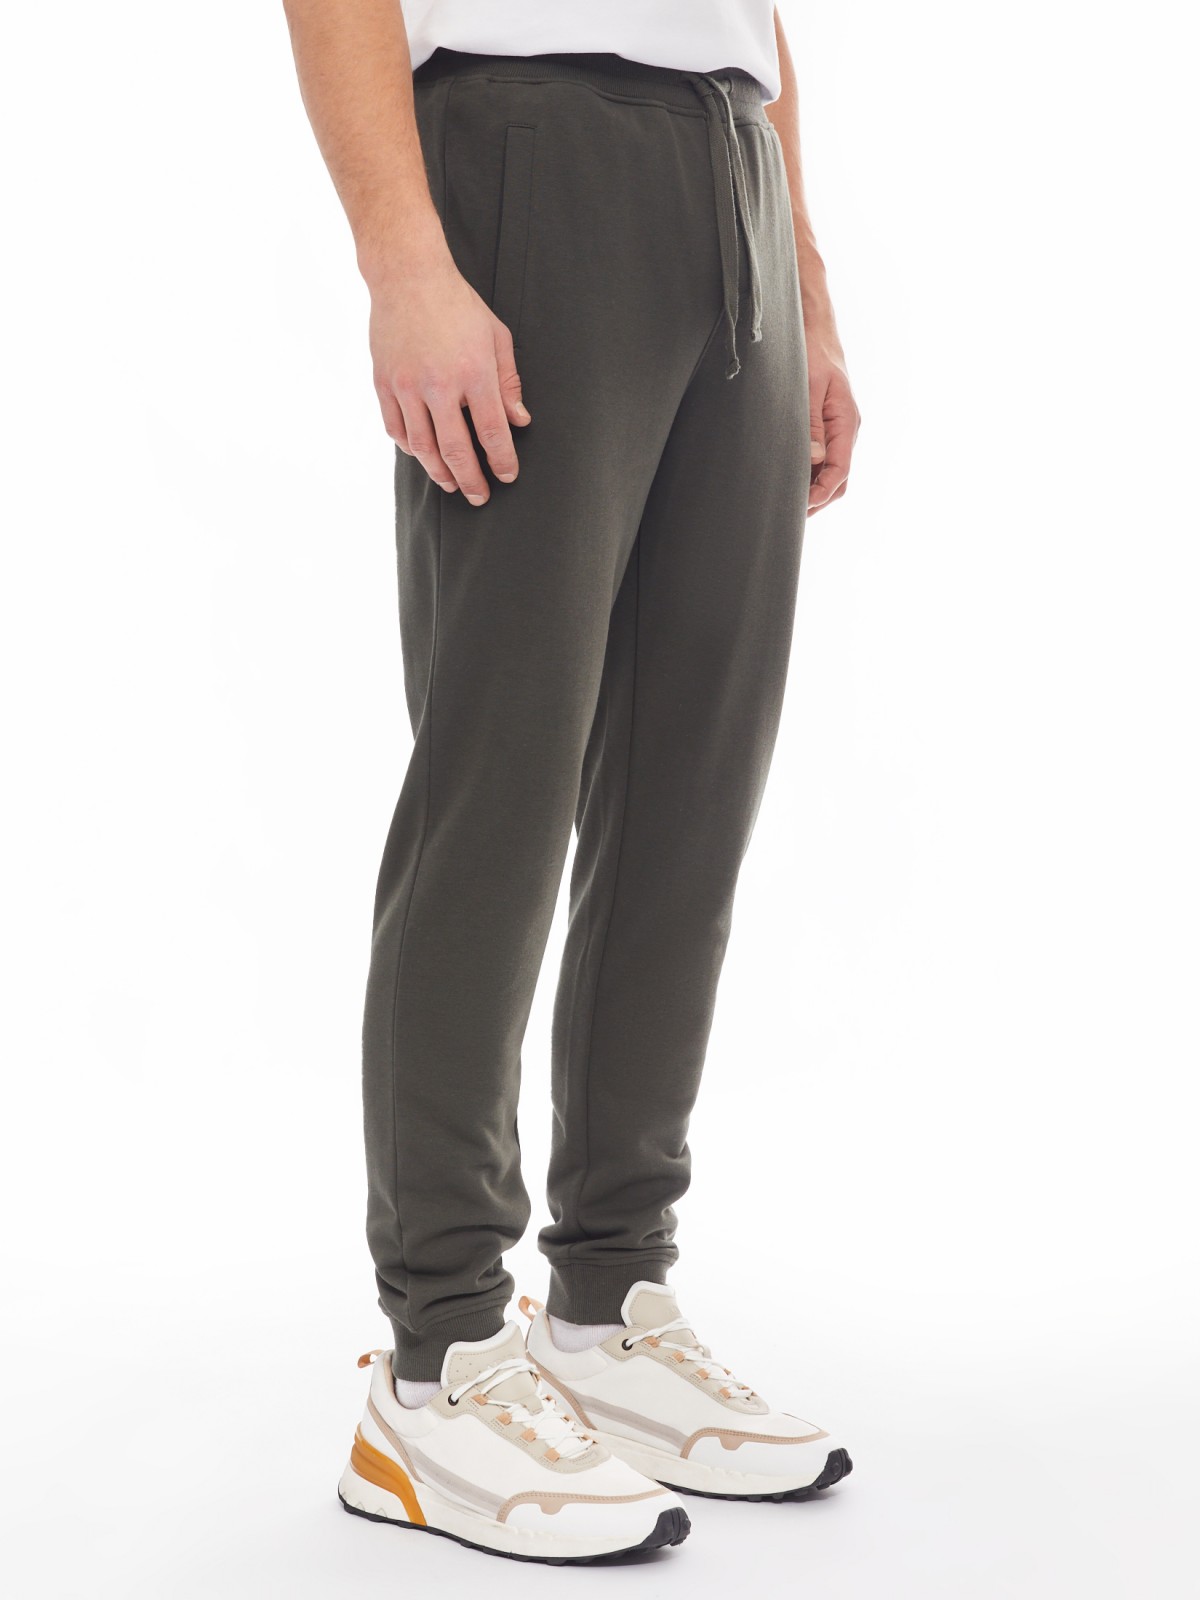 Трикотажные брюки-джоггеры в спортивном стиле zolla 014137675022, цвет хаки, размер M - фото 4